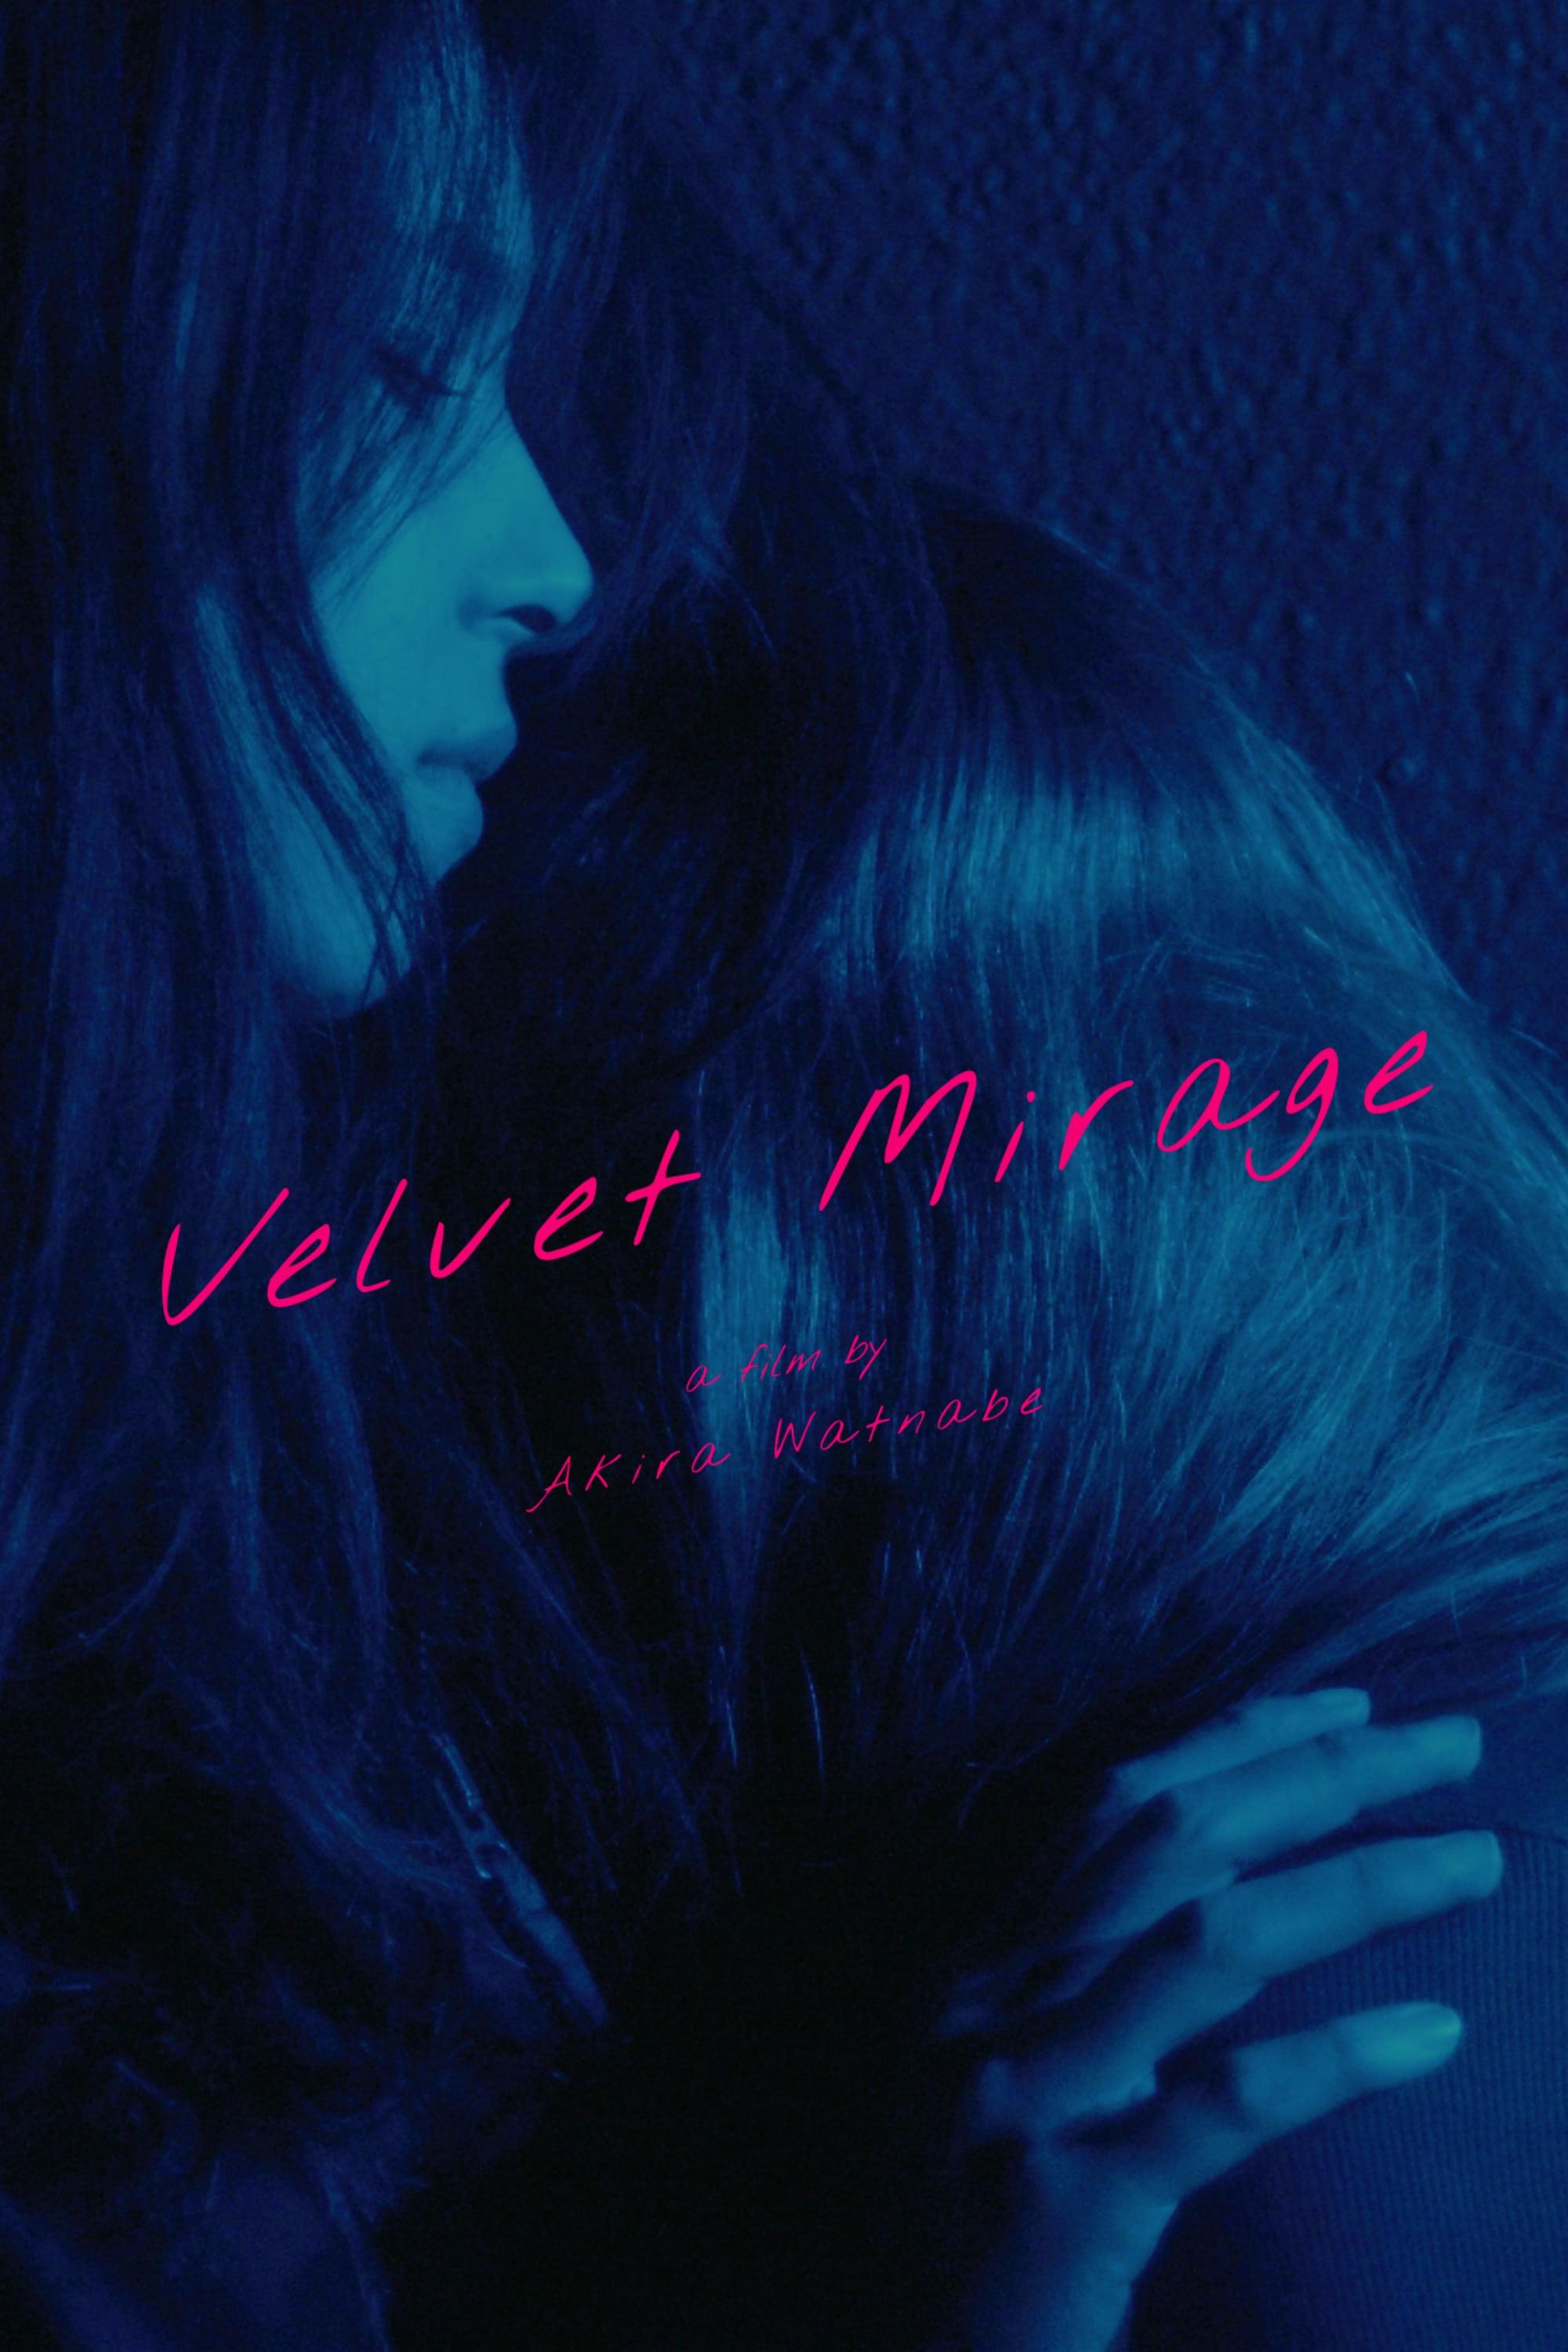 Velvet Mirage poster